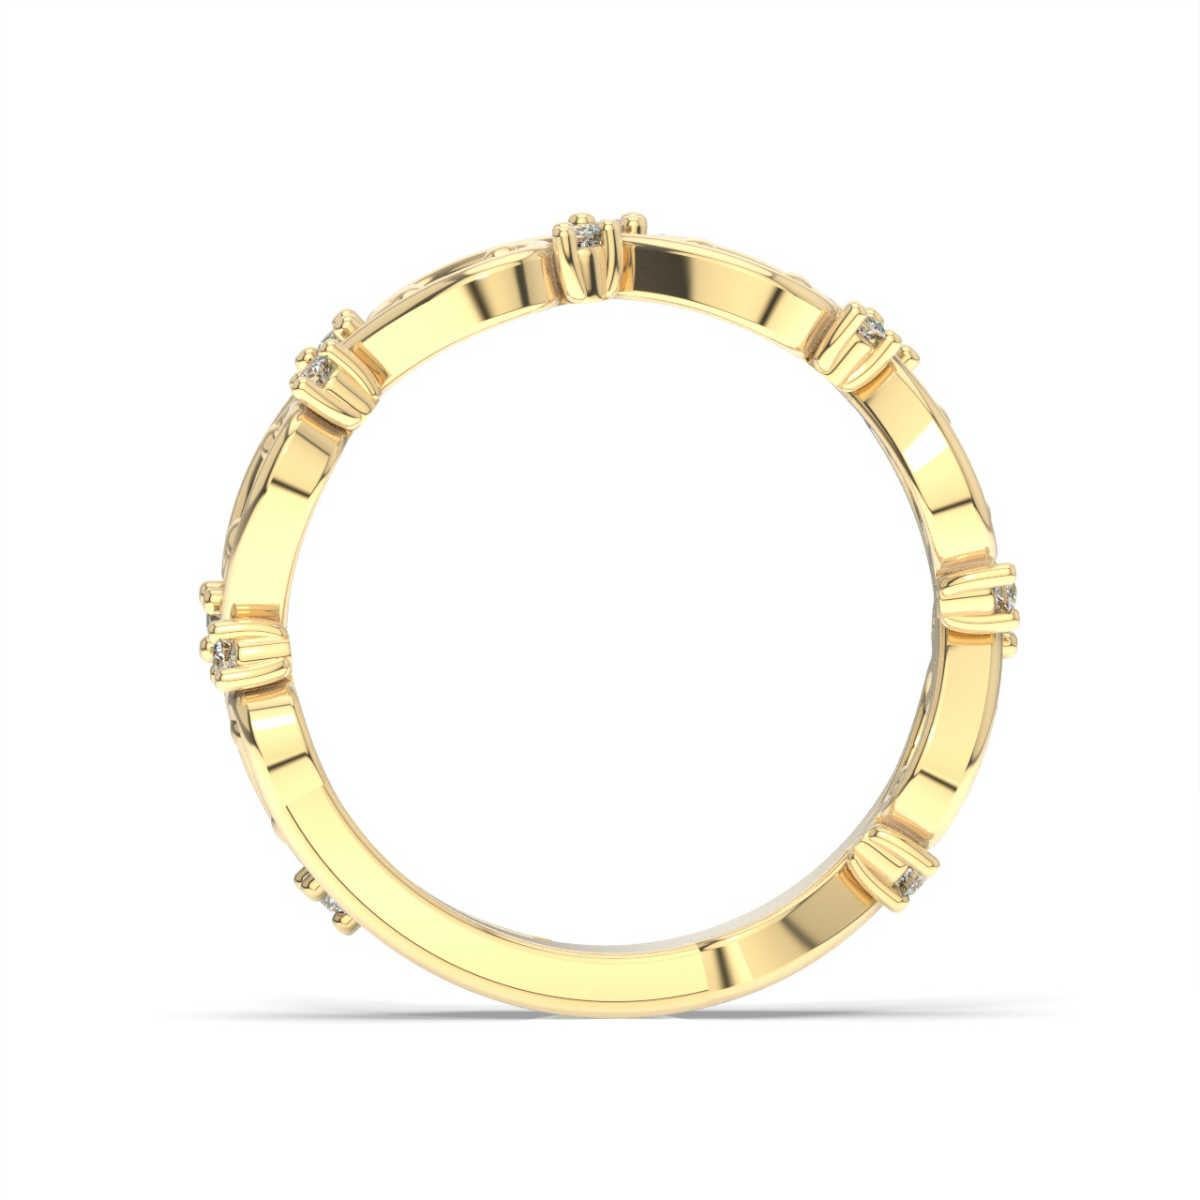 Dieses Ringband zeigt Stränge aus zartem Edelmetall, die zwischen glänzenden runden Diamanten verwoben sind. Erleben Sie den Unterschied!

Einzelheiten zum Produkt: 

Farbe des zentralen Edelsteins: WEISS
Seite Edelstein Typ: NATURDIAMANT
Seite